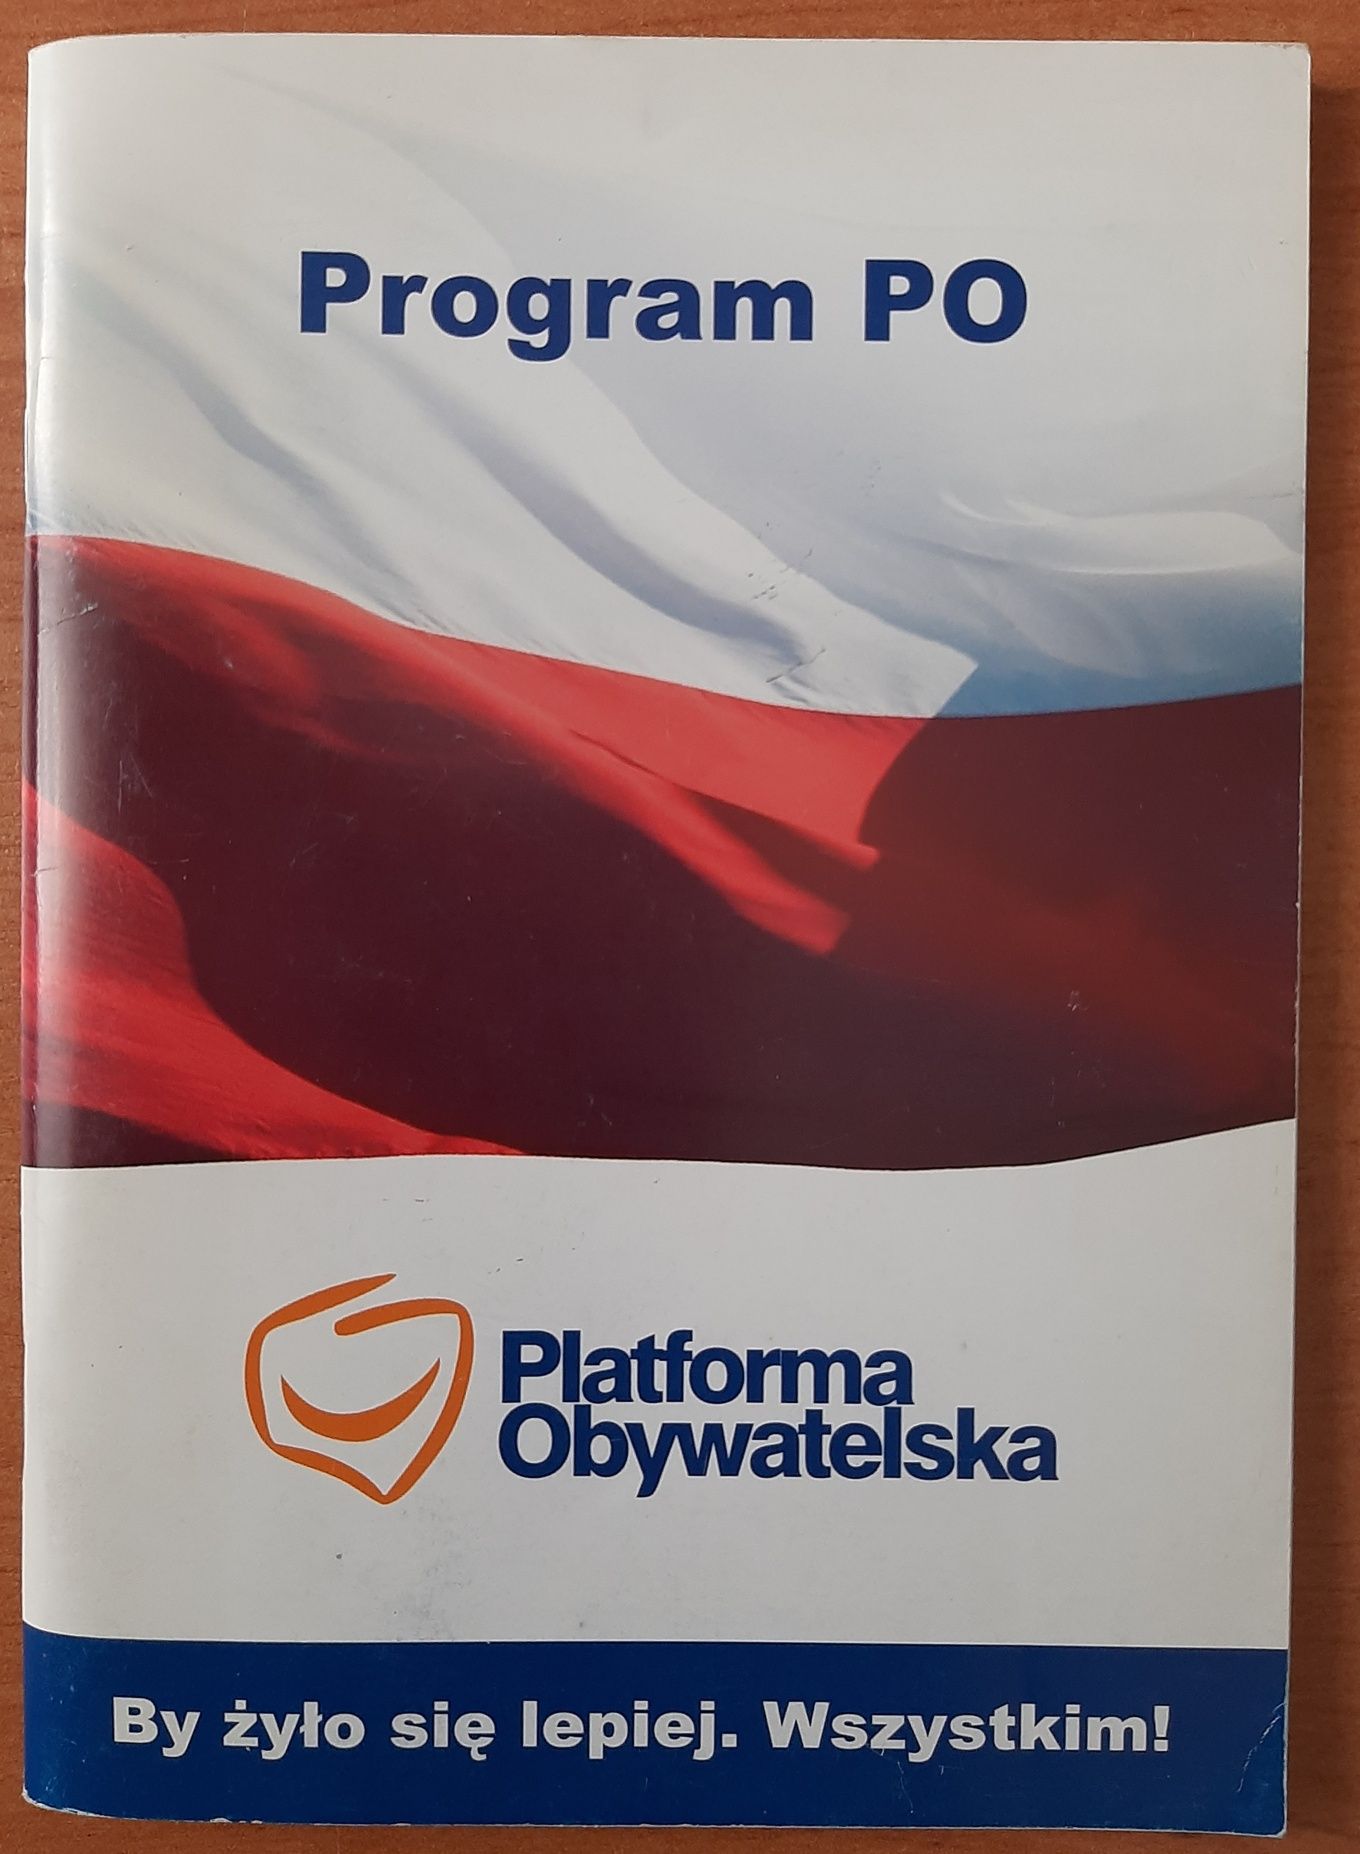 Broszura Program Wyborczy Platforma Obywatelska nowy 2007 r. sprzedam